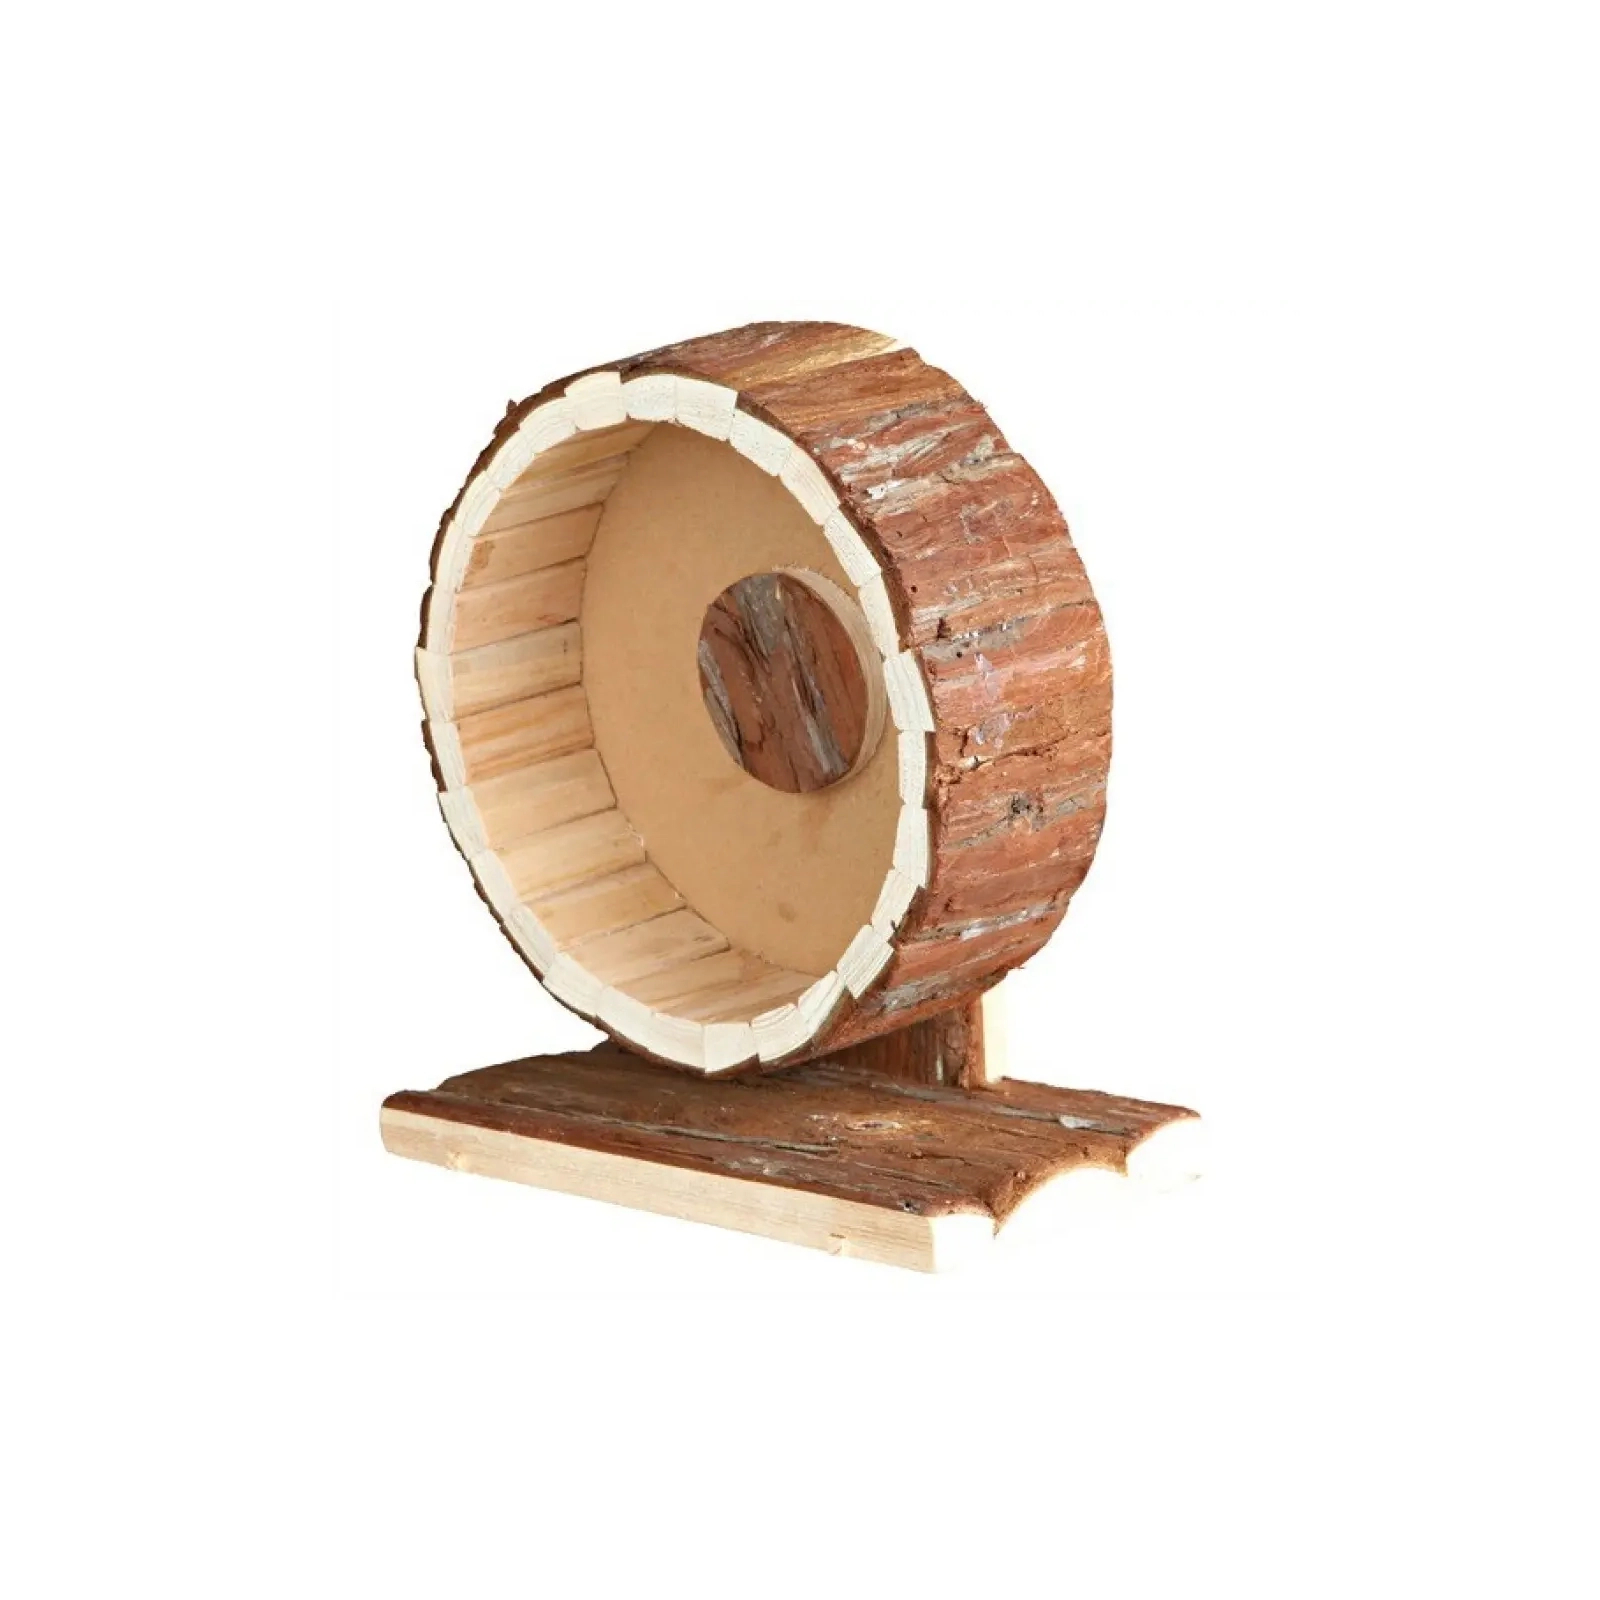 Іграшка для гризунів Trixie Natural Living Бігове колесо d:23 см (4011905610351)